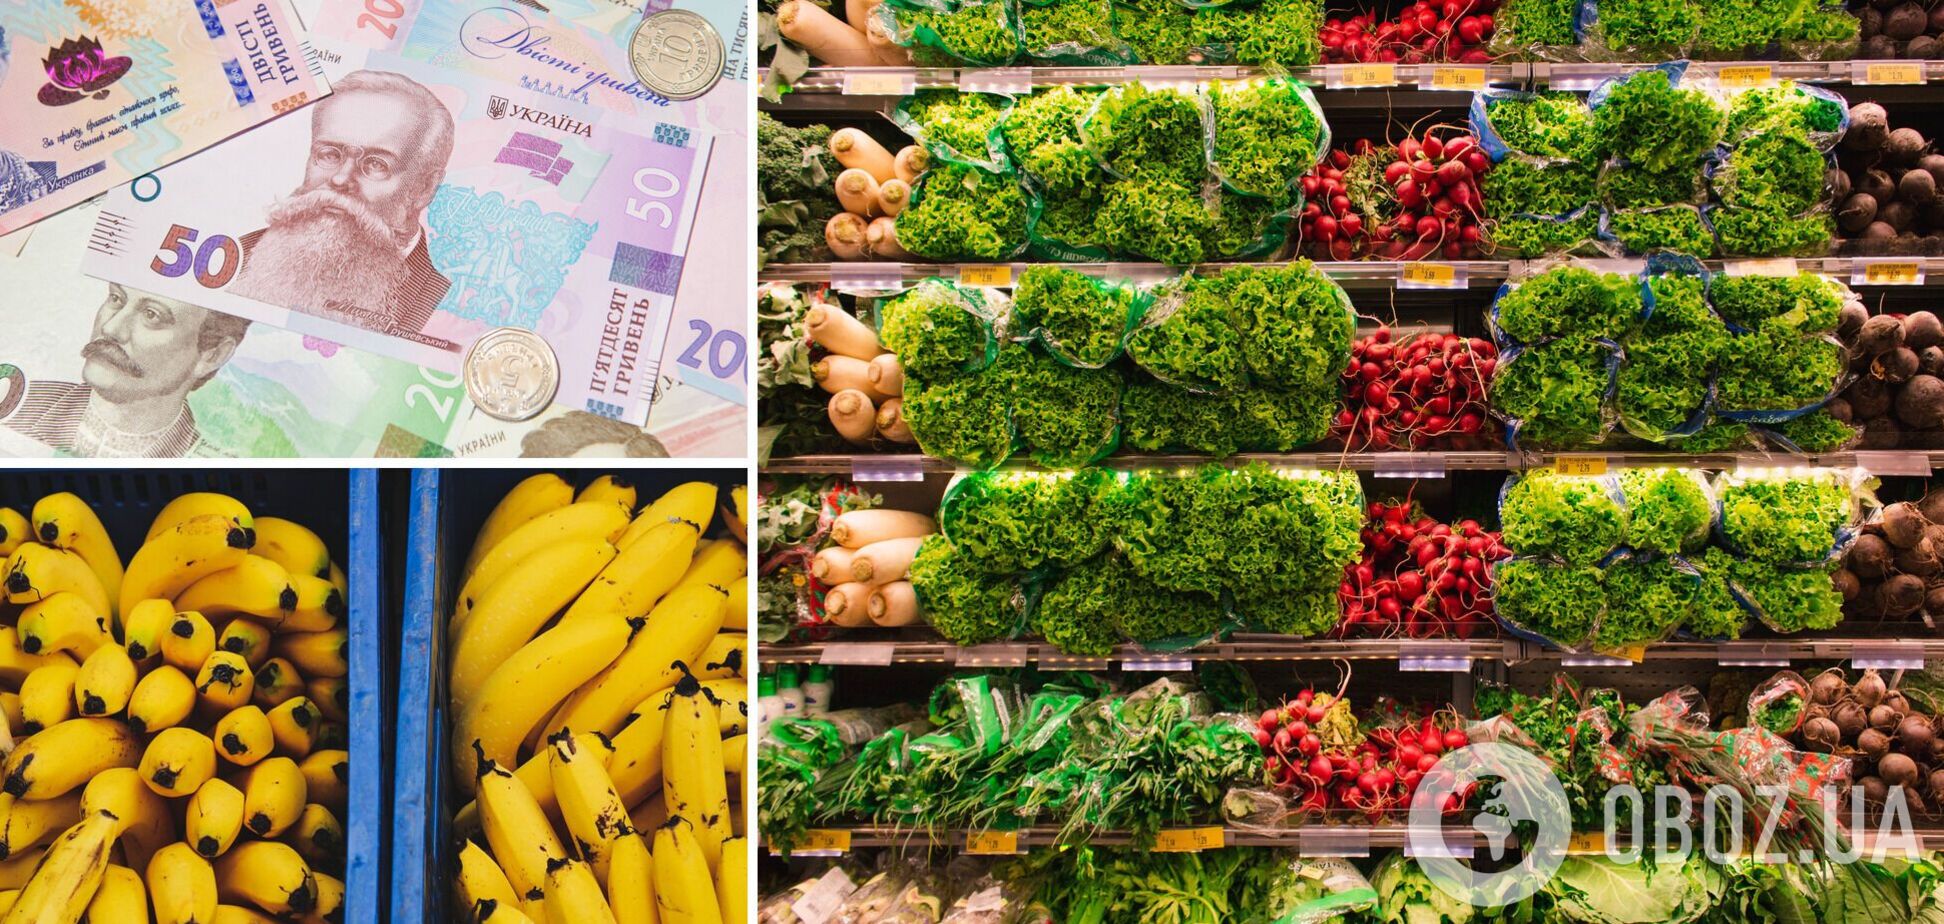 Стало известно, какие овощи и фрукты приносят 70% выручки супермаркетам в Украине